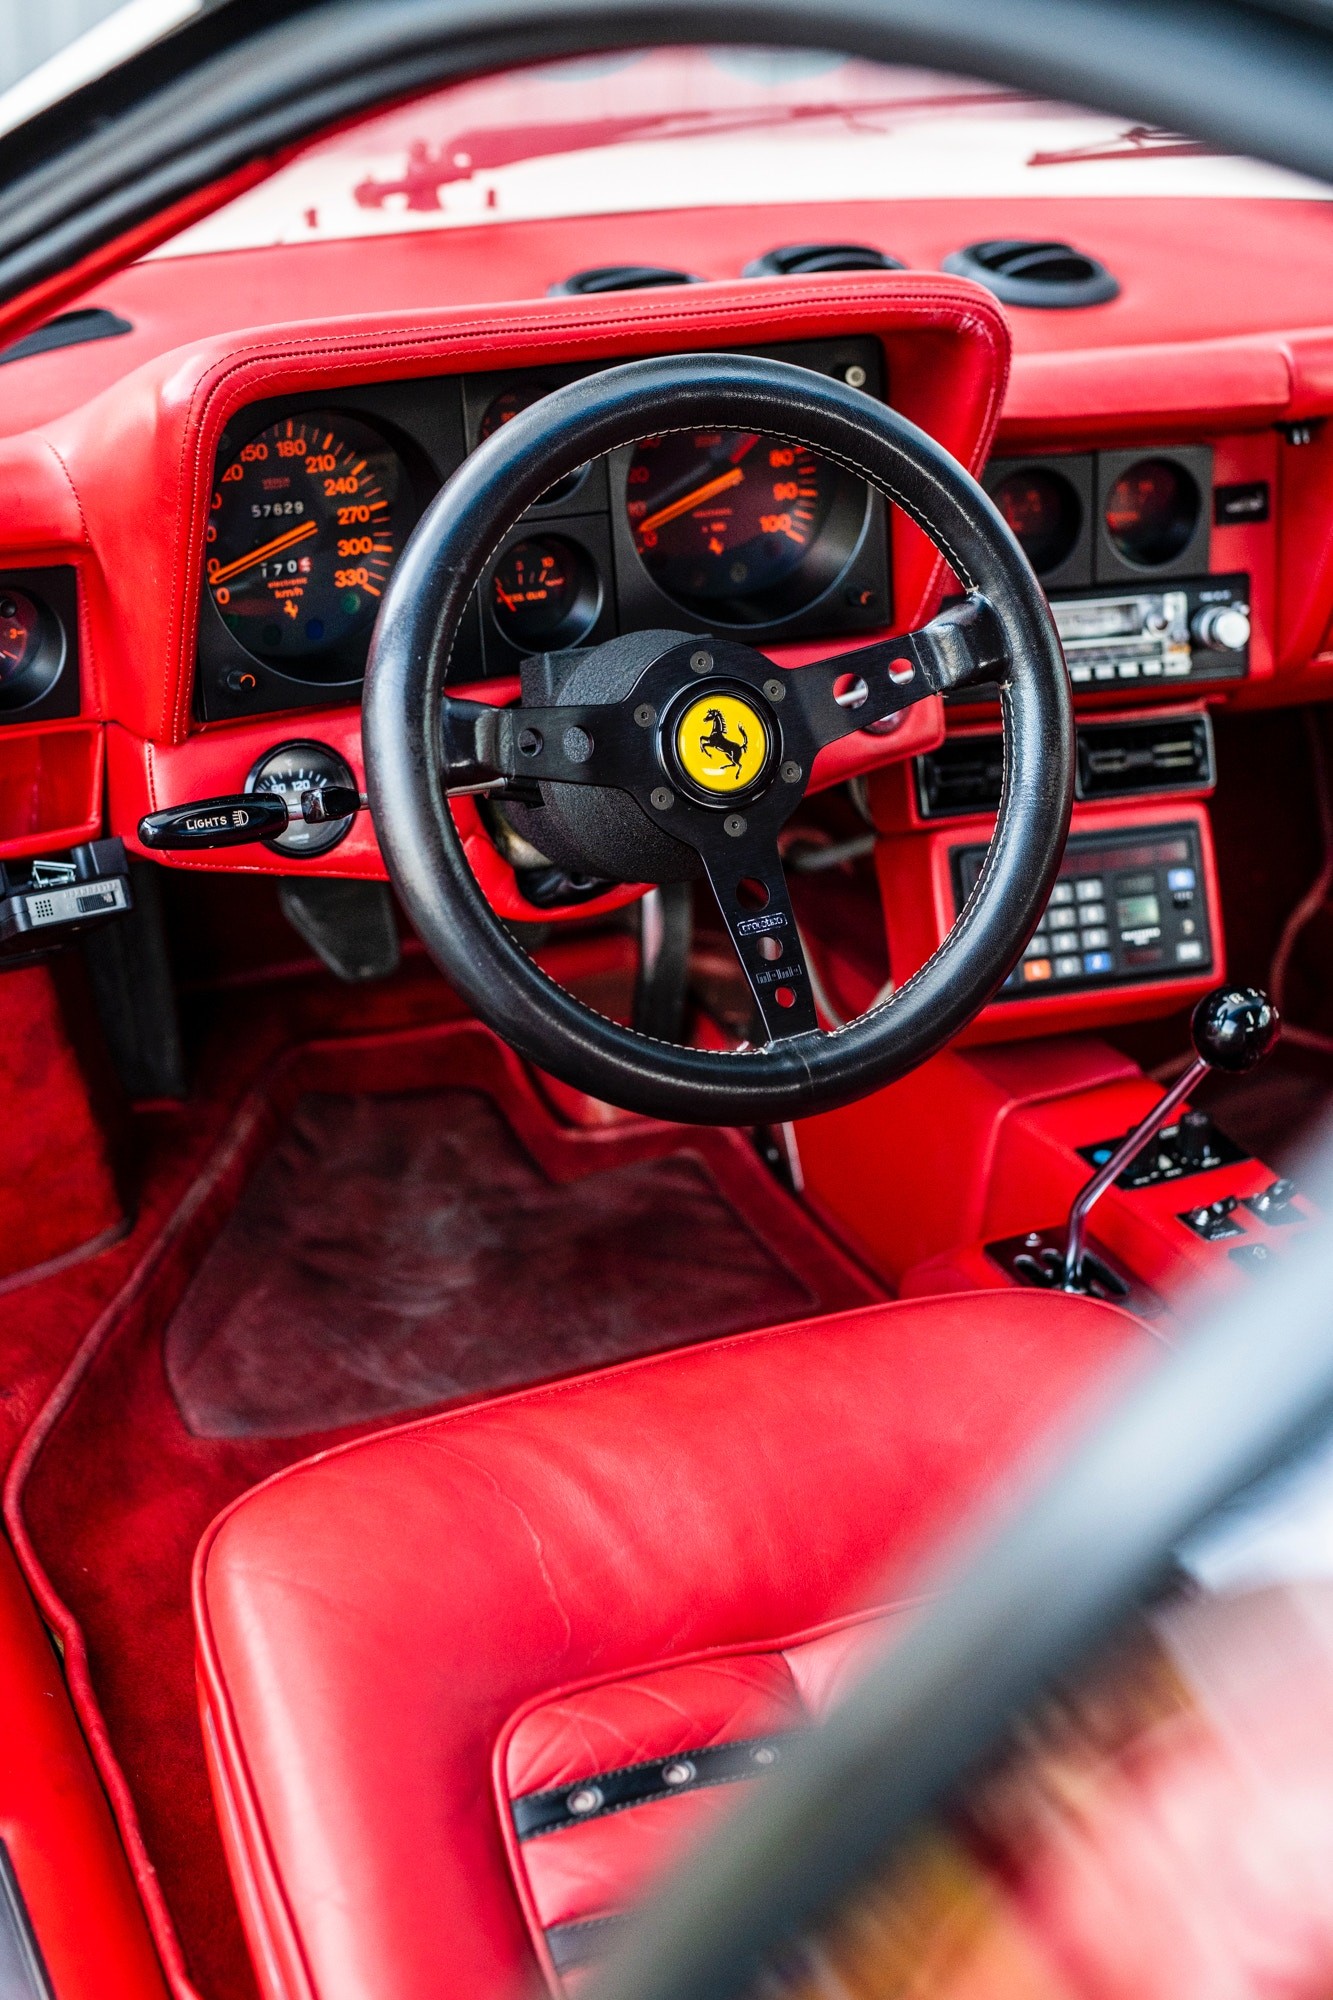 Ferrari 512 BB Koenig Special - чистое излишество 1980-х